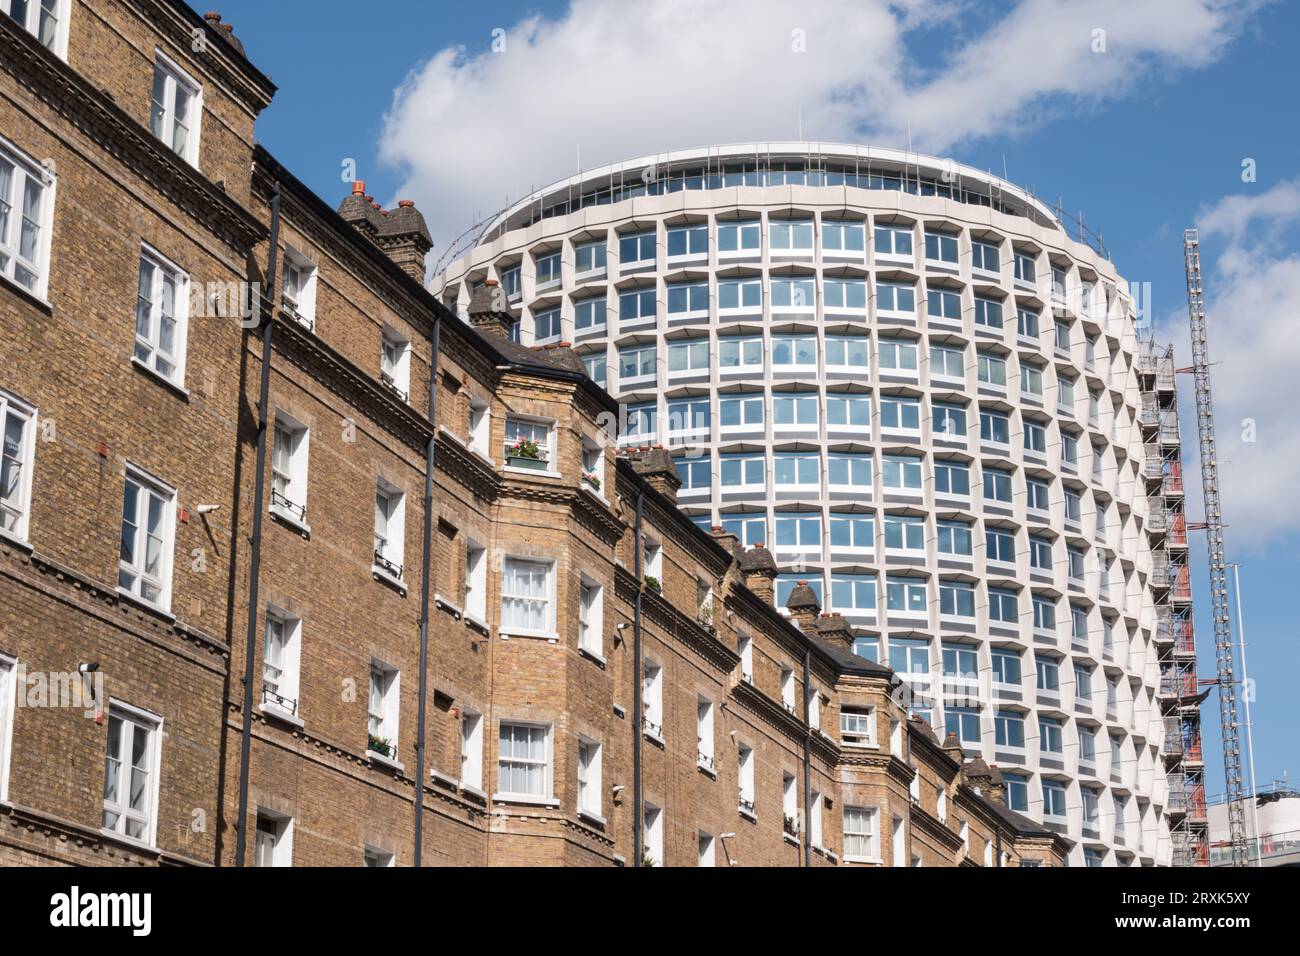 Die brutalistische Fassade von Harry Hyams' Space House in der Kemble Street neben Häusern auf dem Peabody Trust Estate, London, WC2, England, Großbritannien Stockfoto